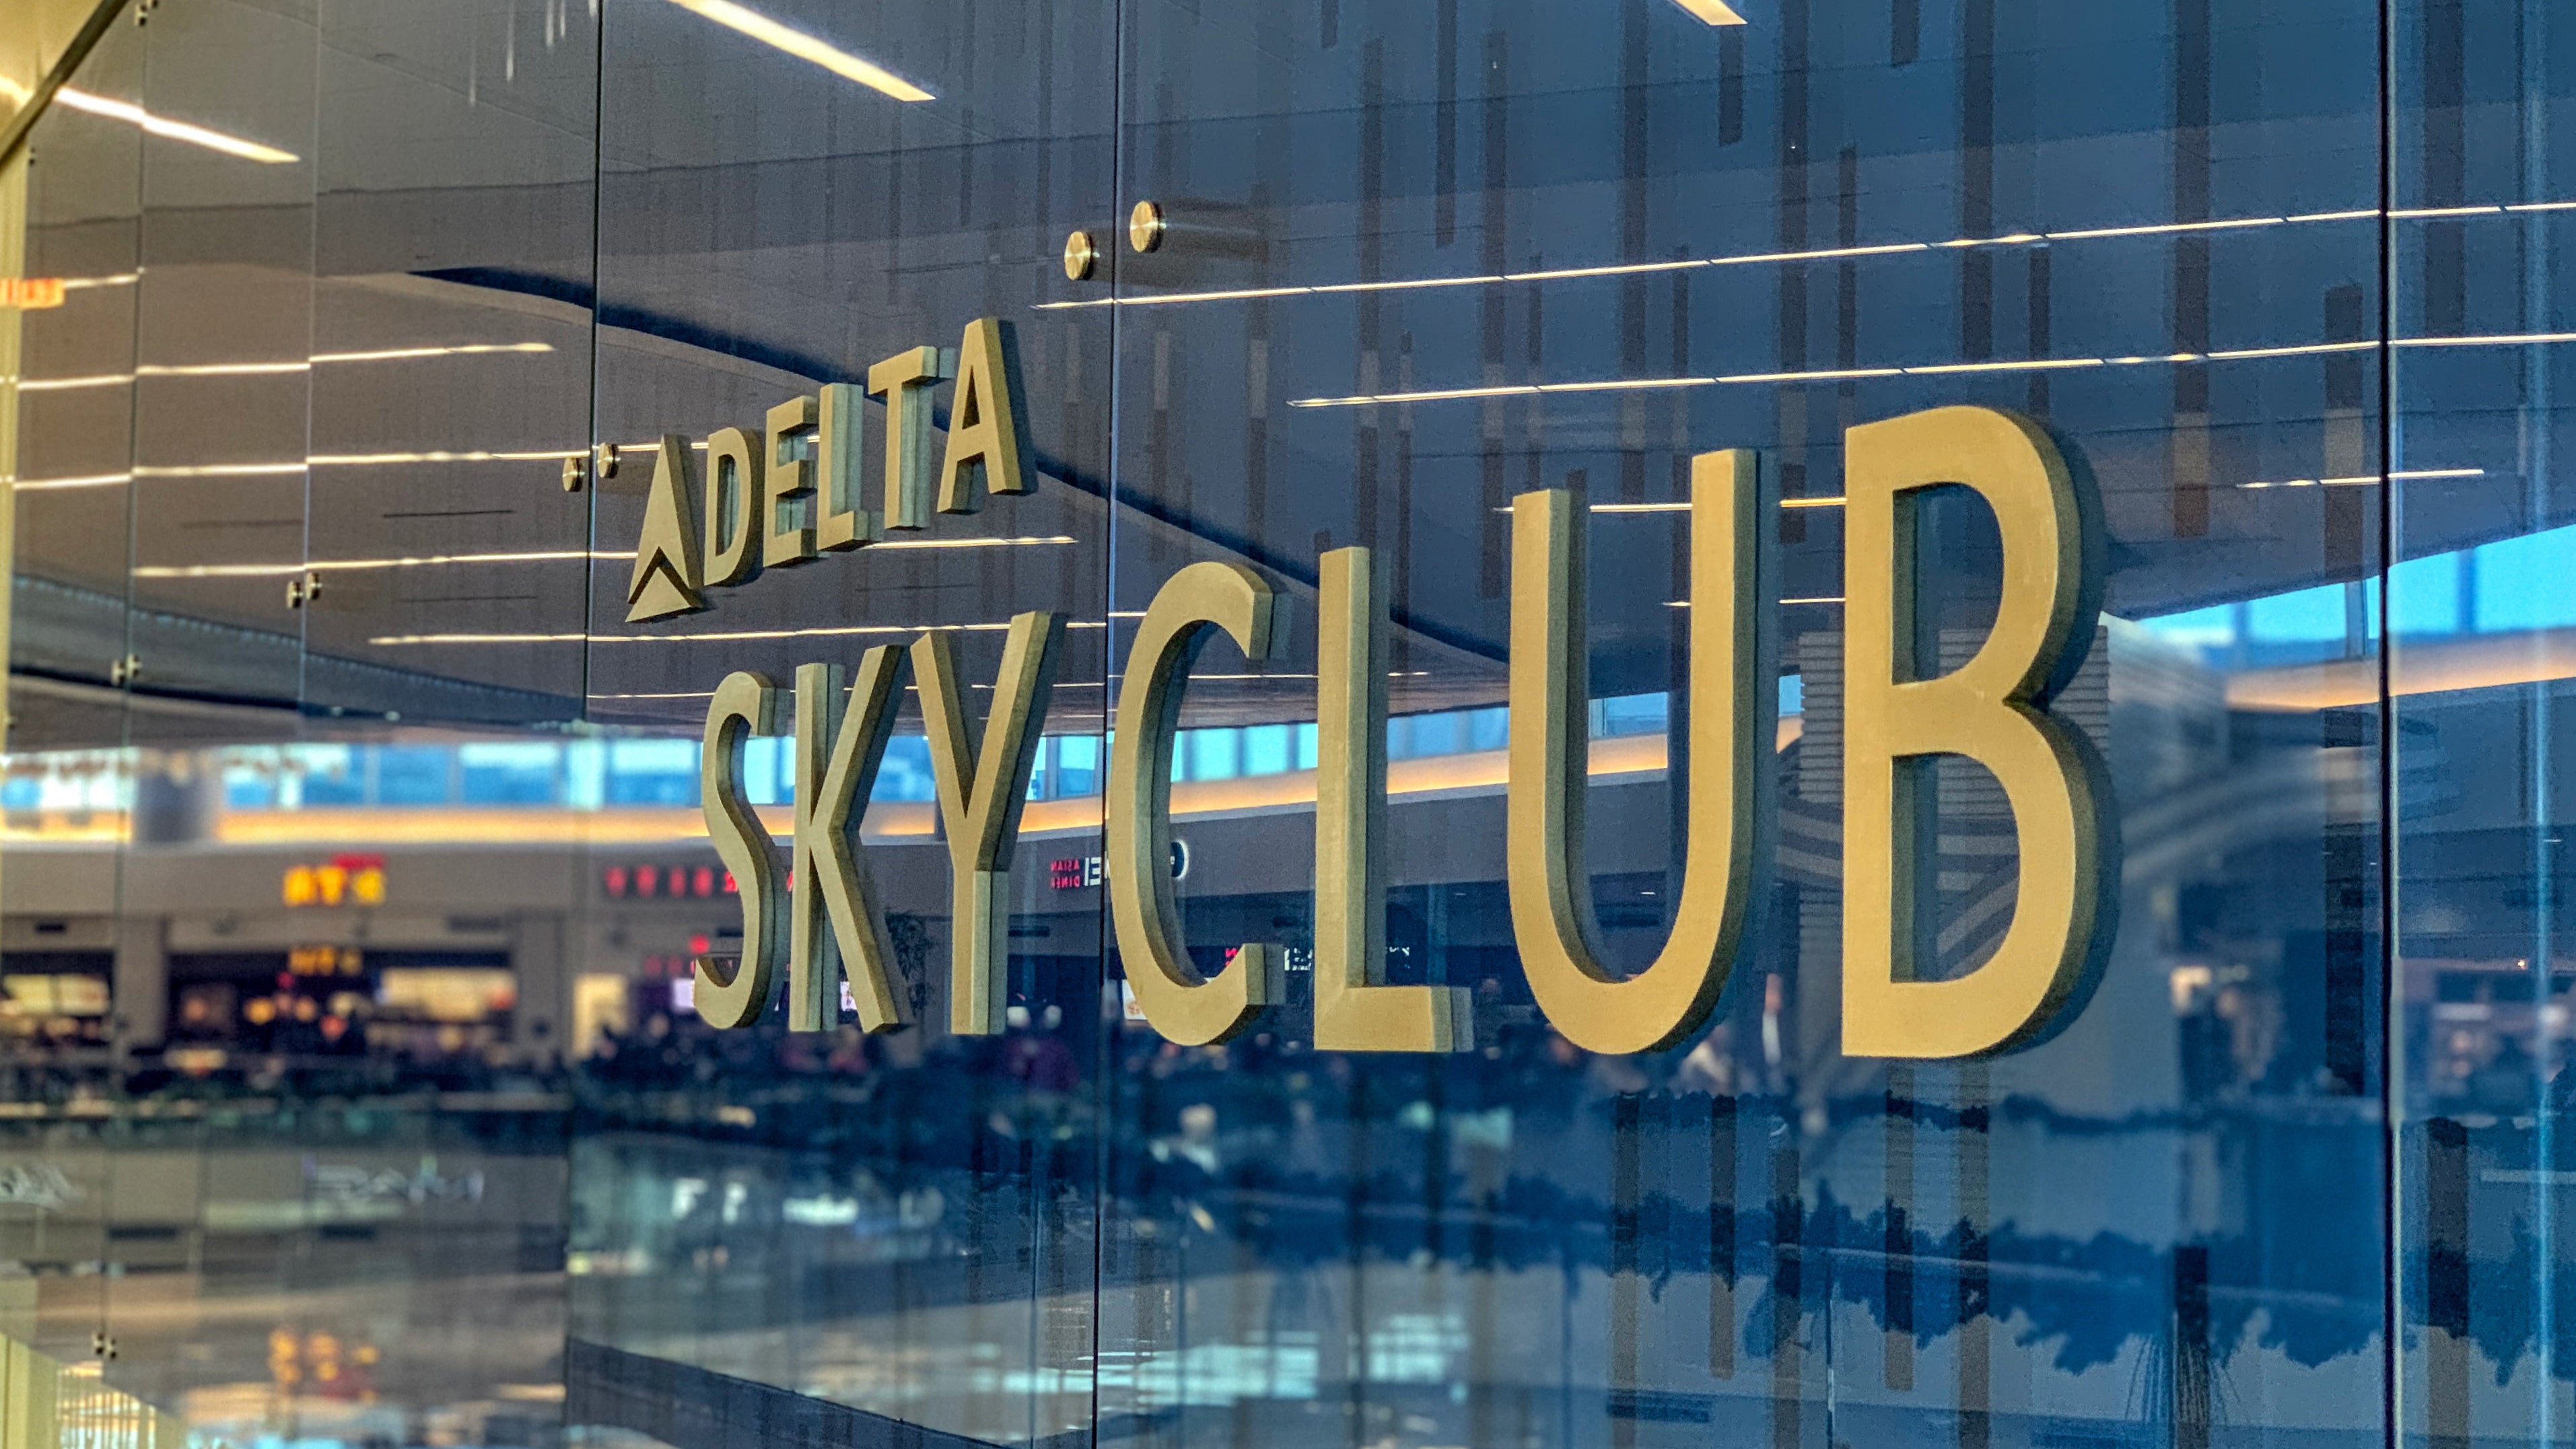 delta_sky-club-sign-wall